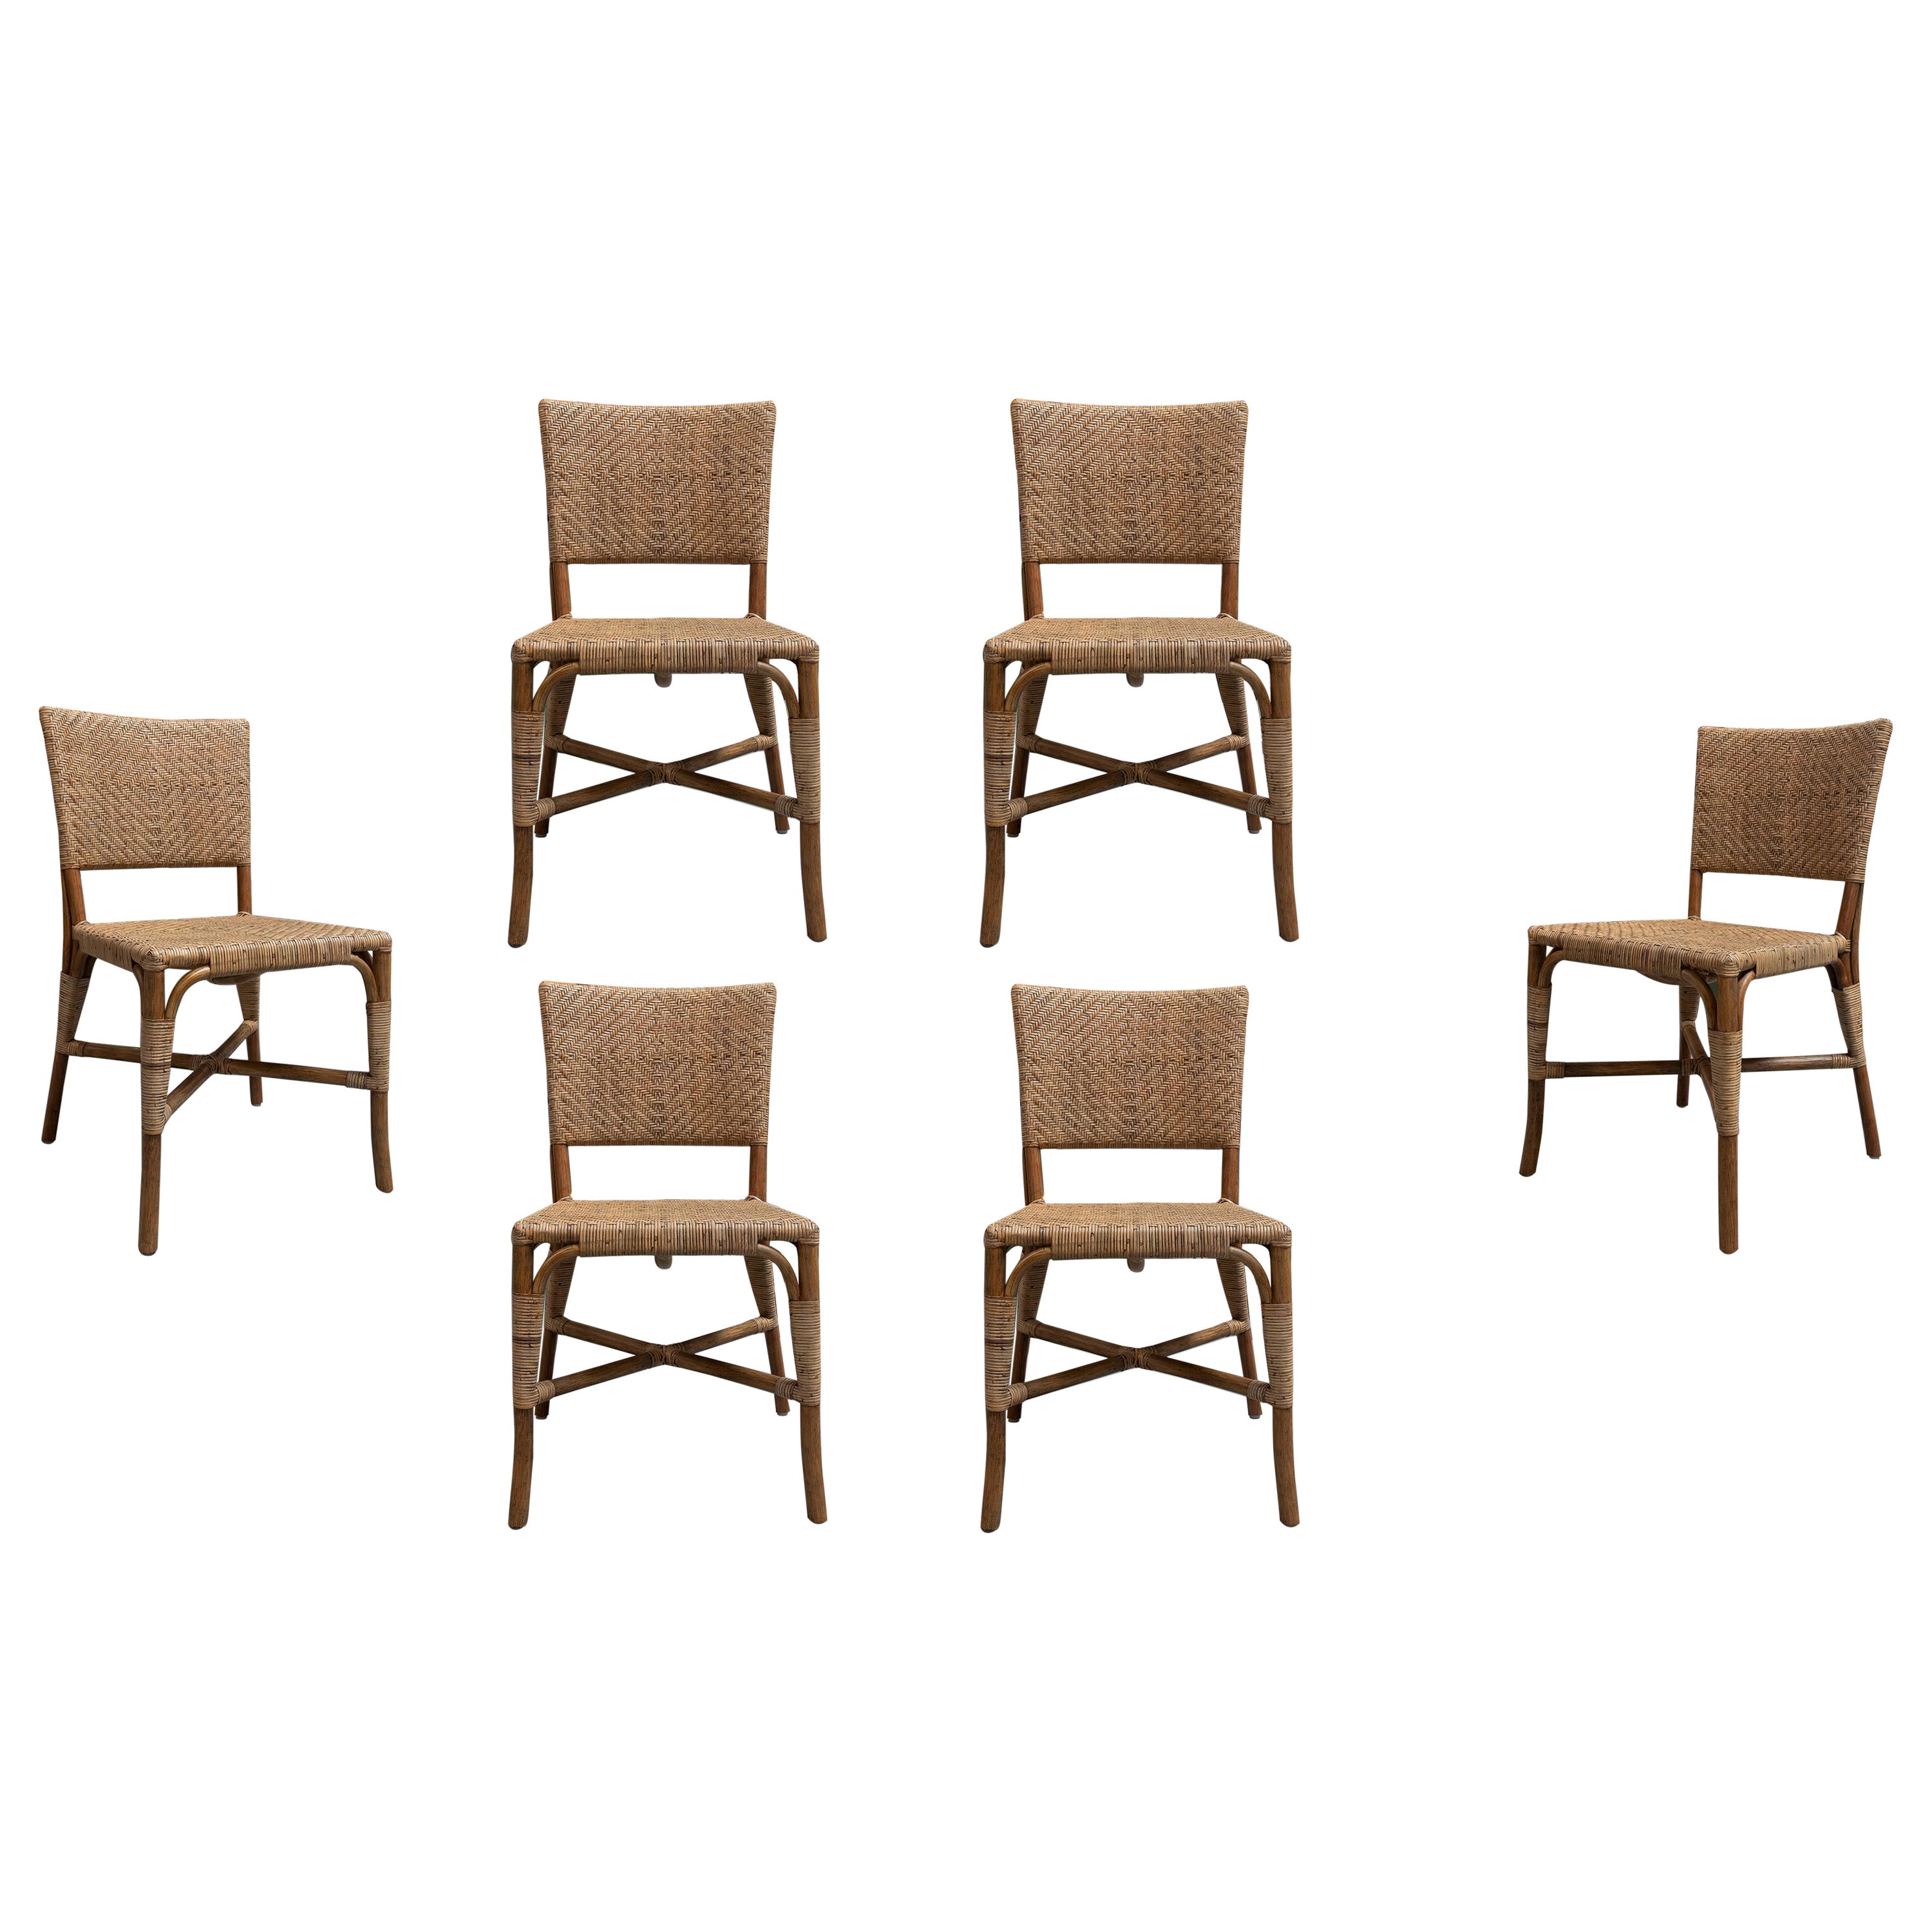 Ensemble de 6 chaises modernes espagnoles en bambou et osier tissé à la main